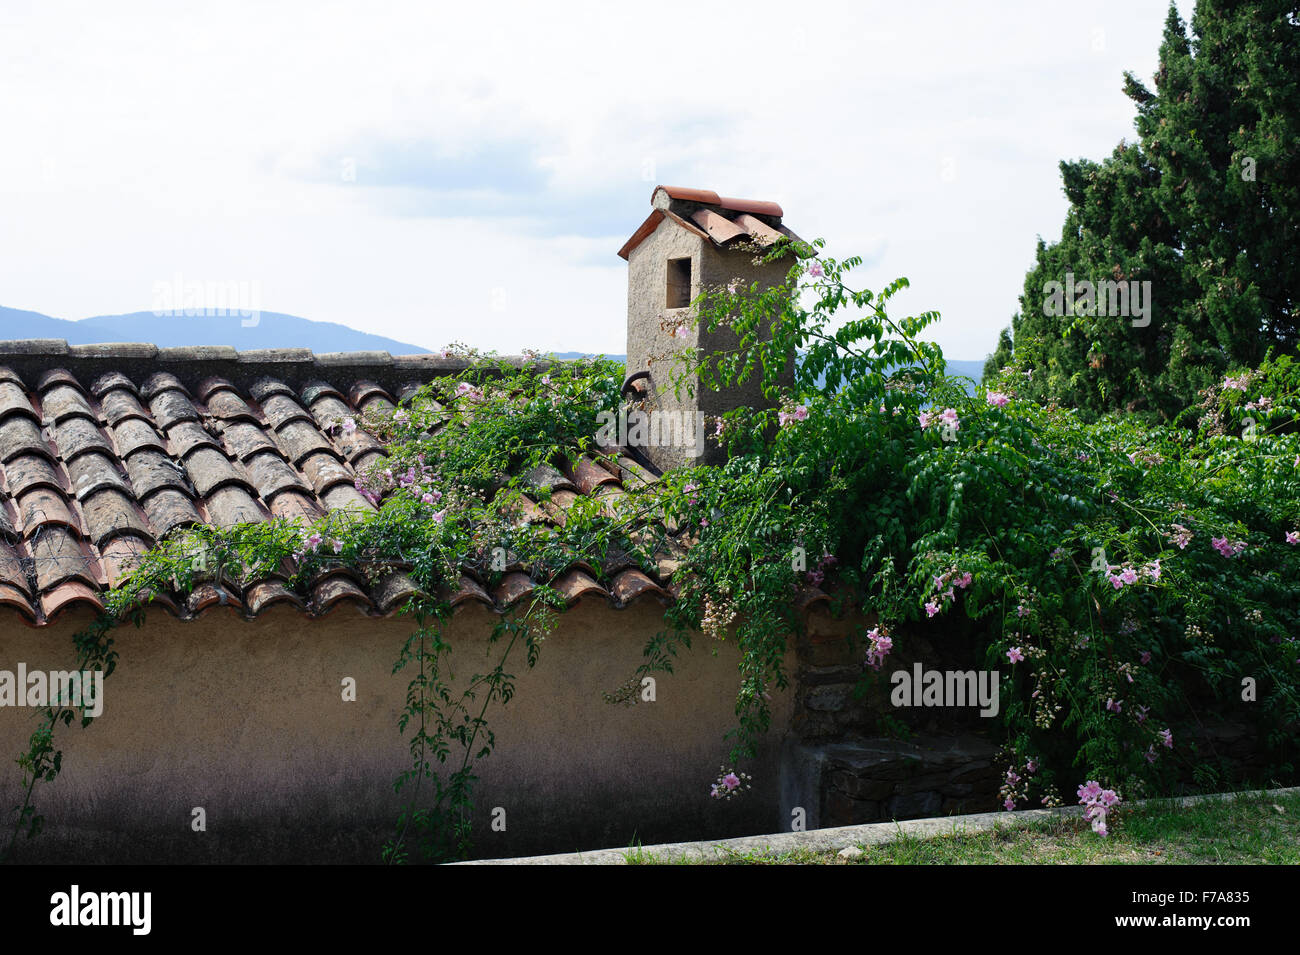 Blick auf den alten Ziegeldach und Wand in einem schönen grünen Garten Stockfoto